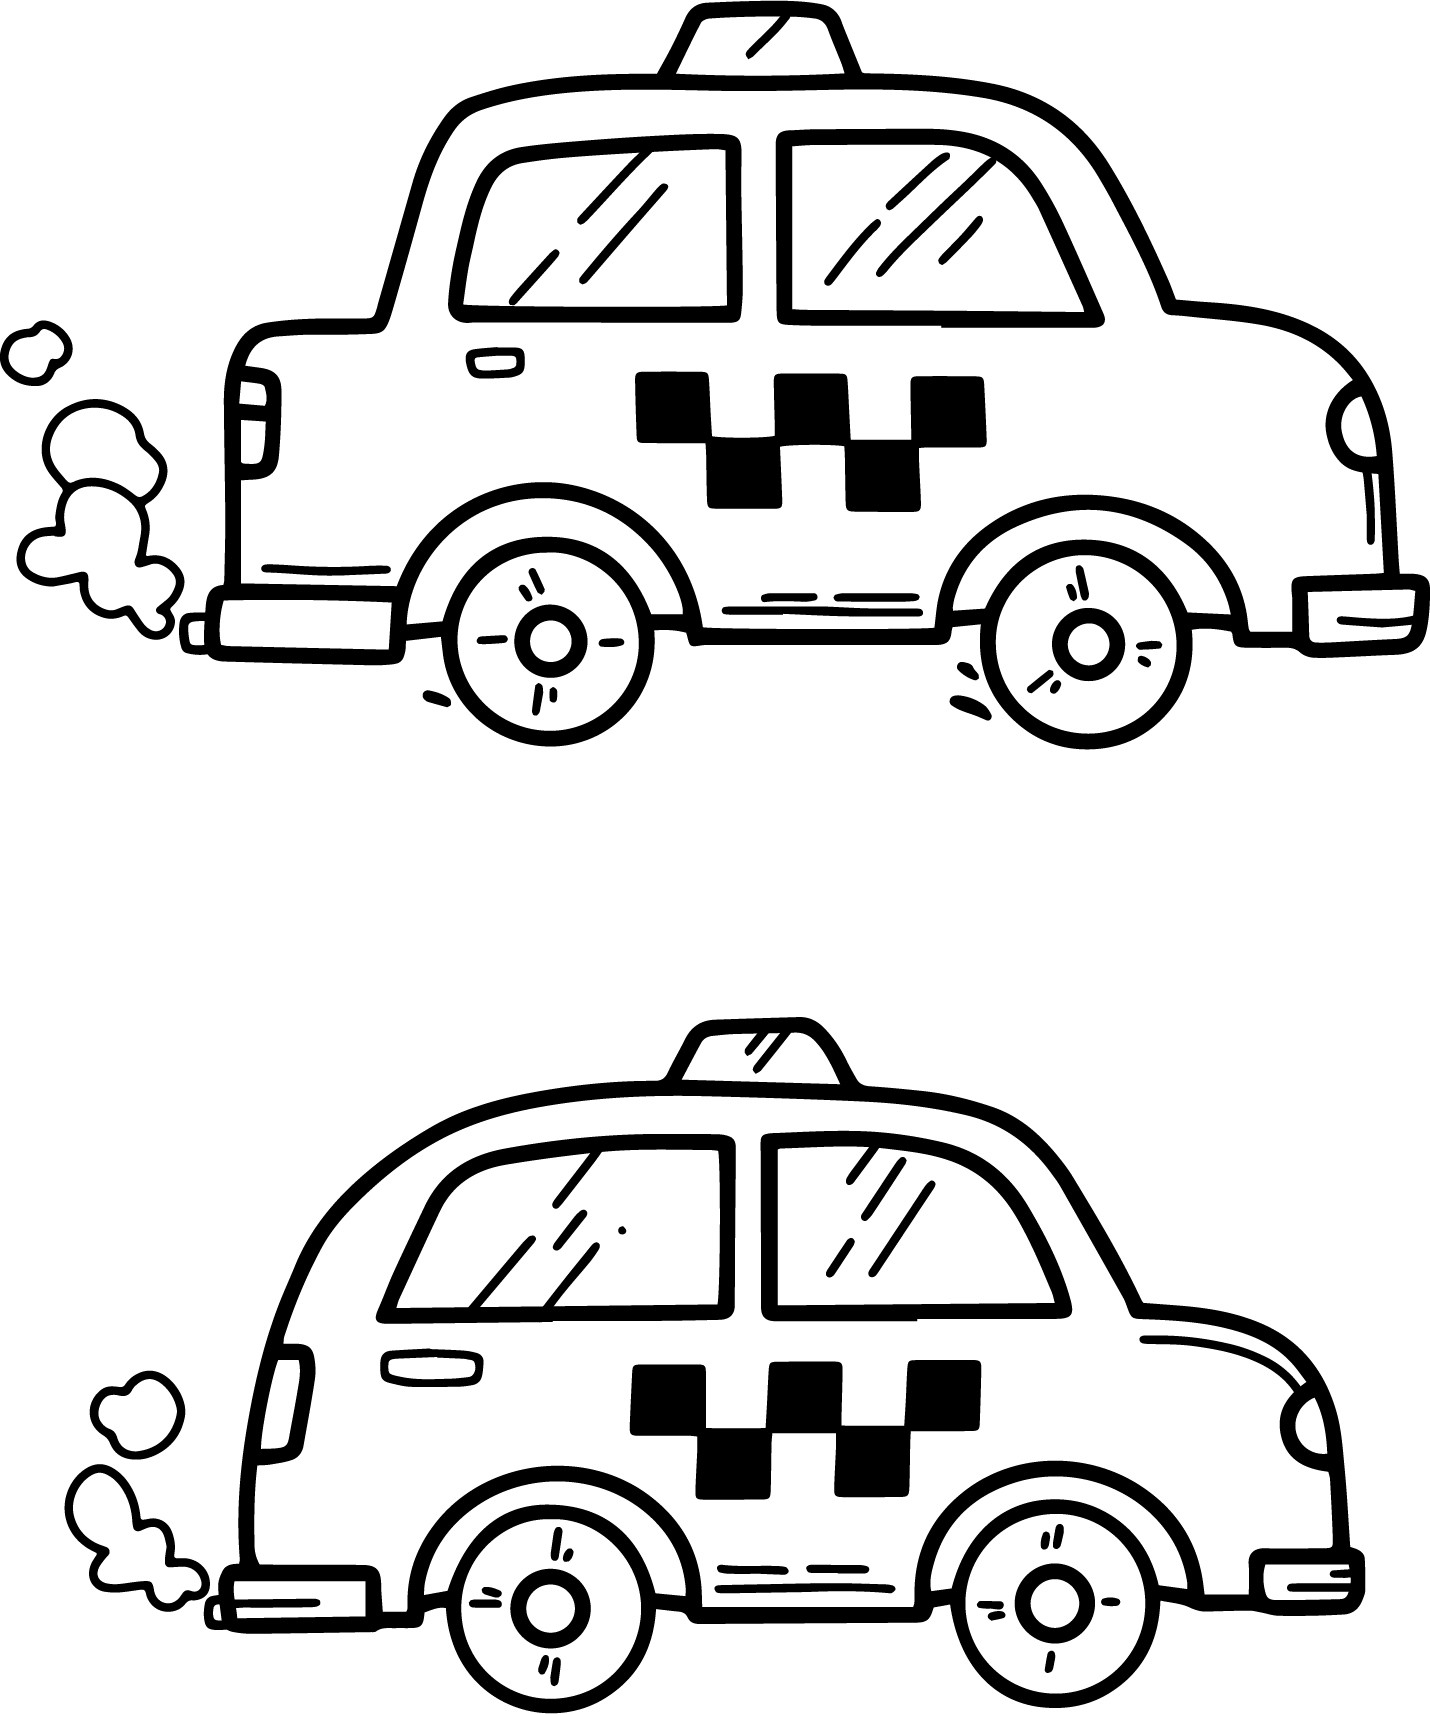 Раскраска для детей: две маленькие машинки такси